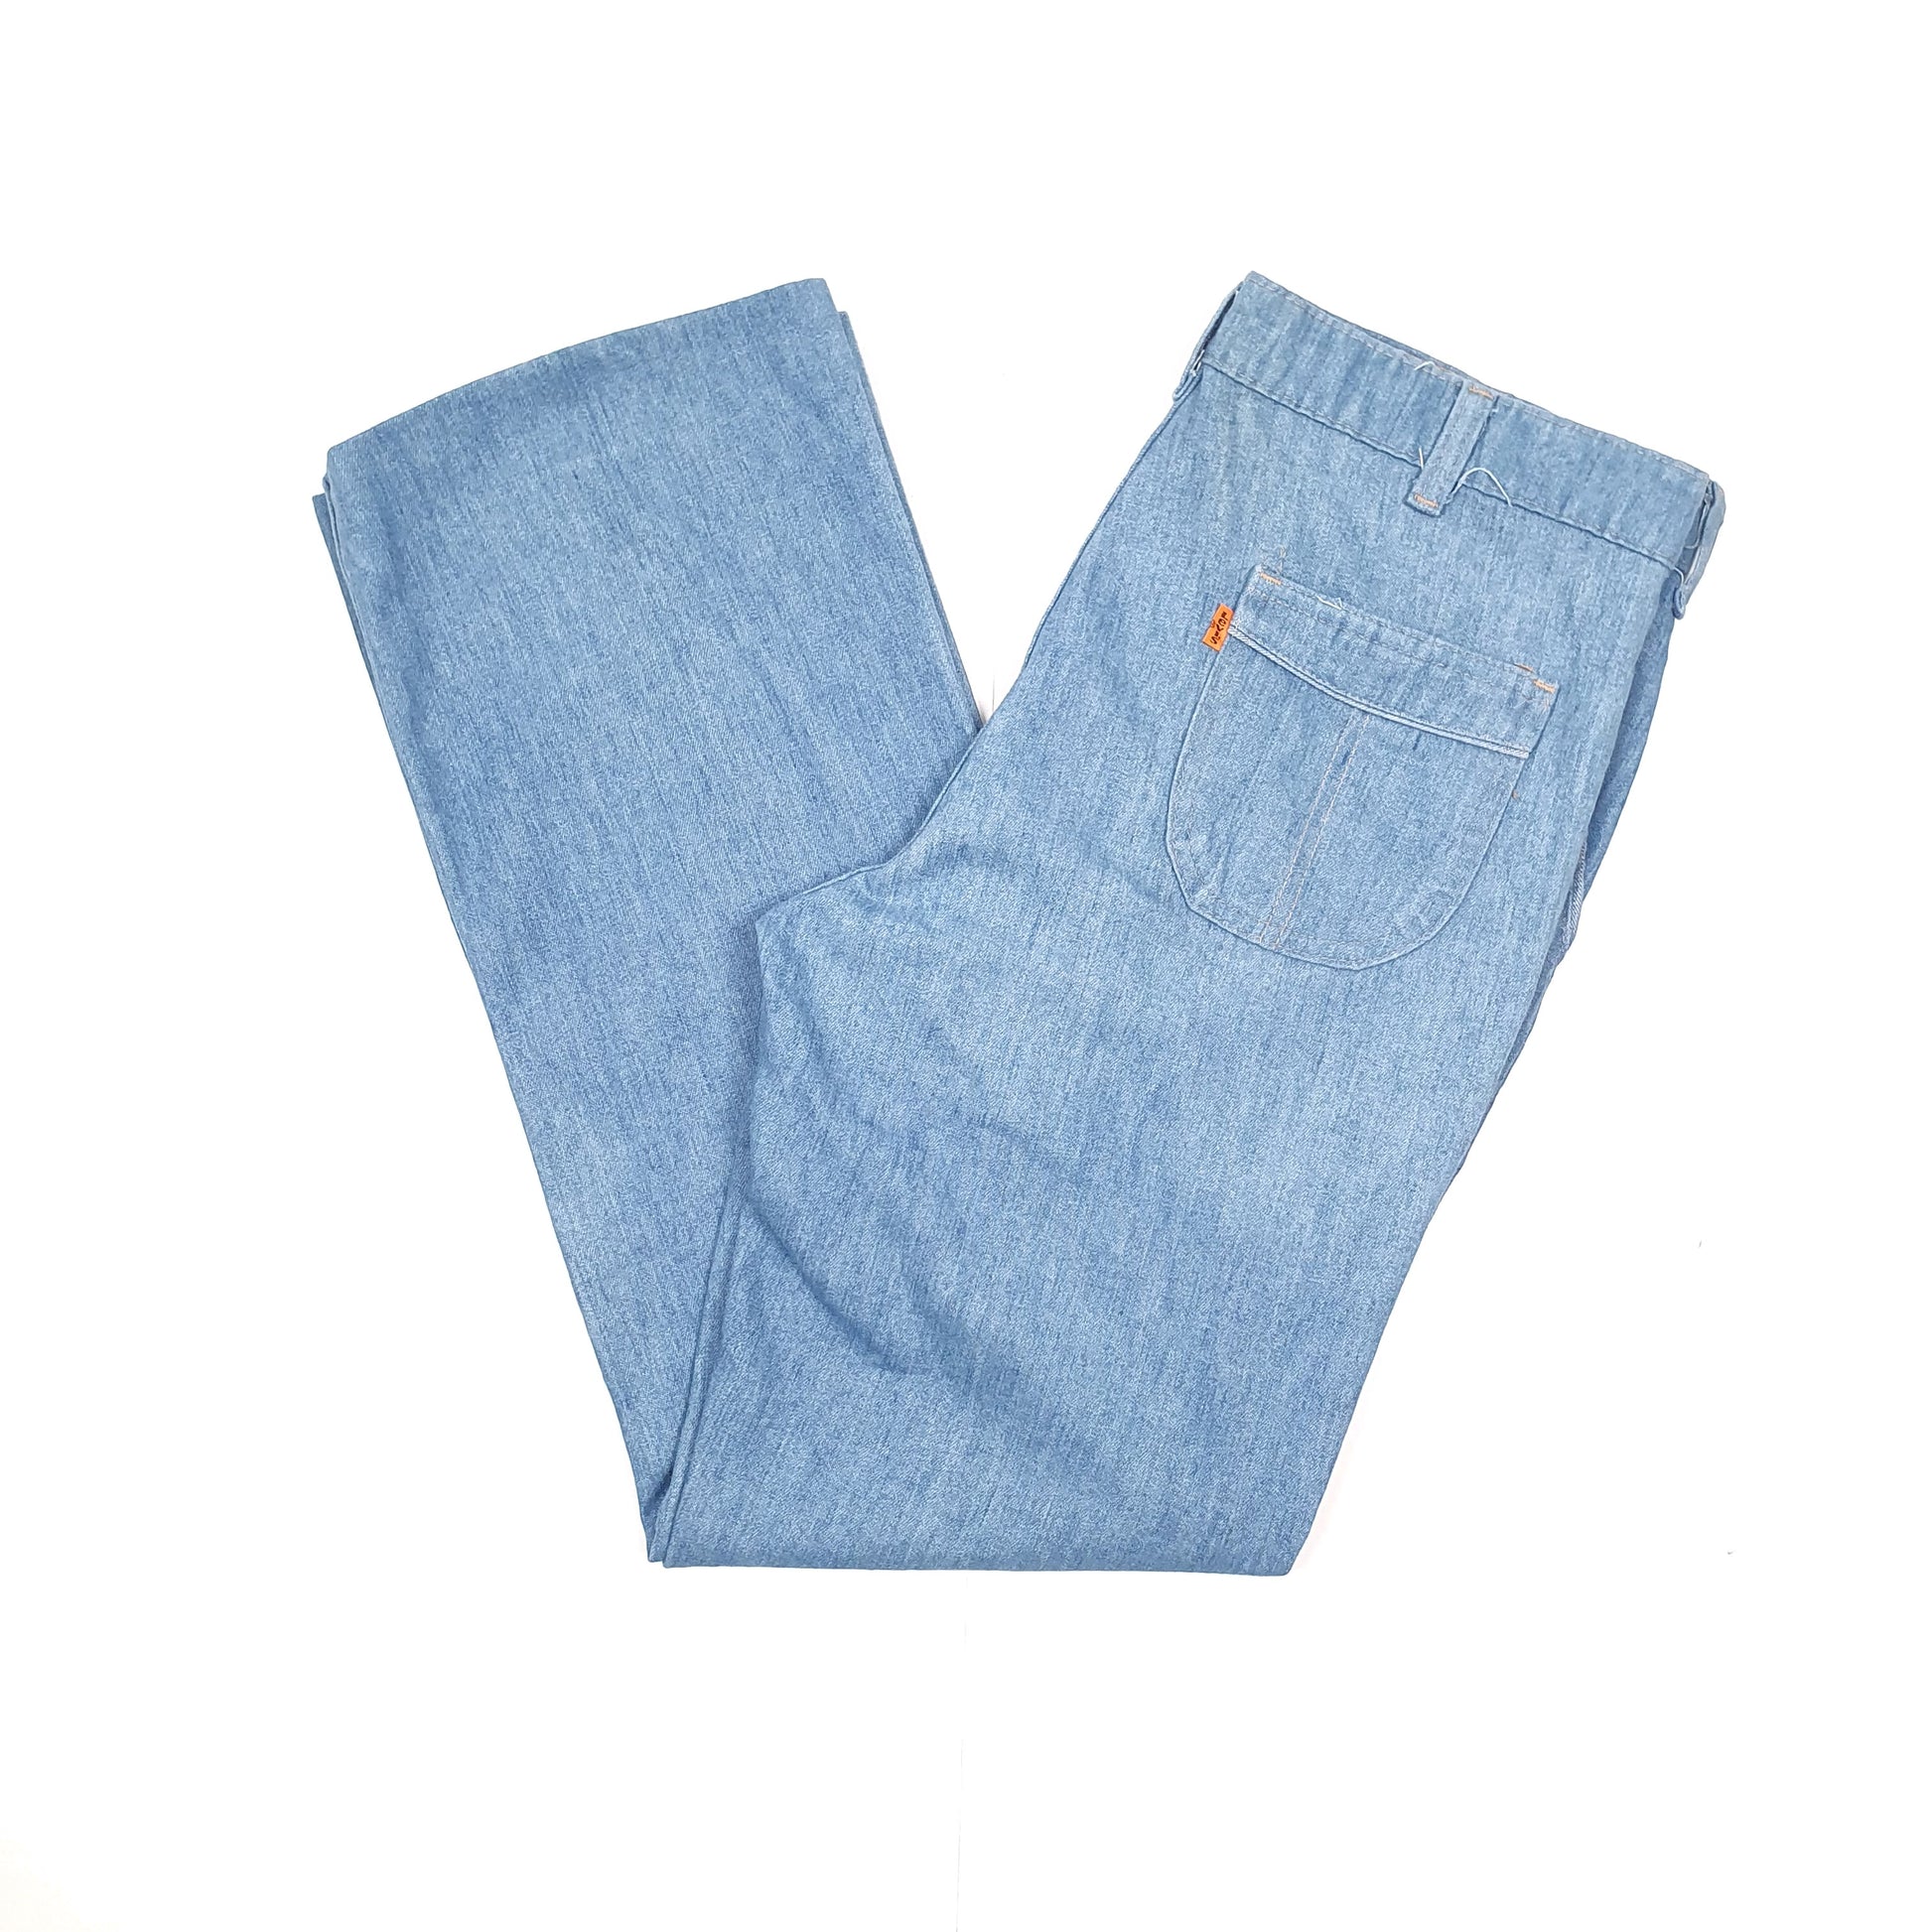 Mens Levis Orange Tab Straight Leg Blue Chino Trousers W32 L30 Blue